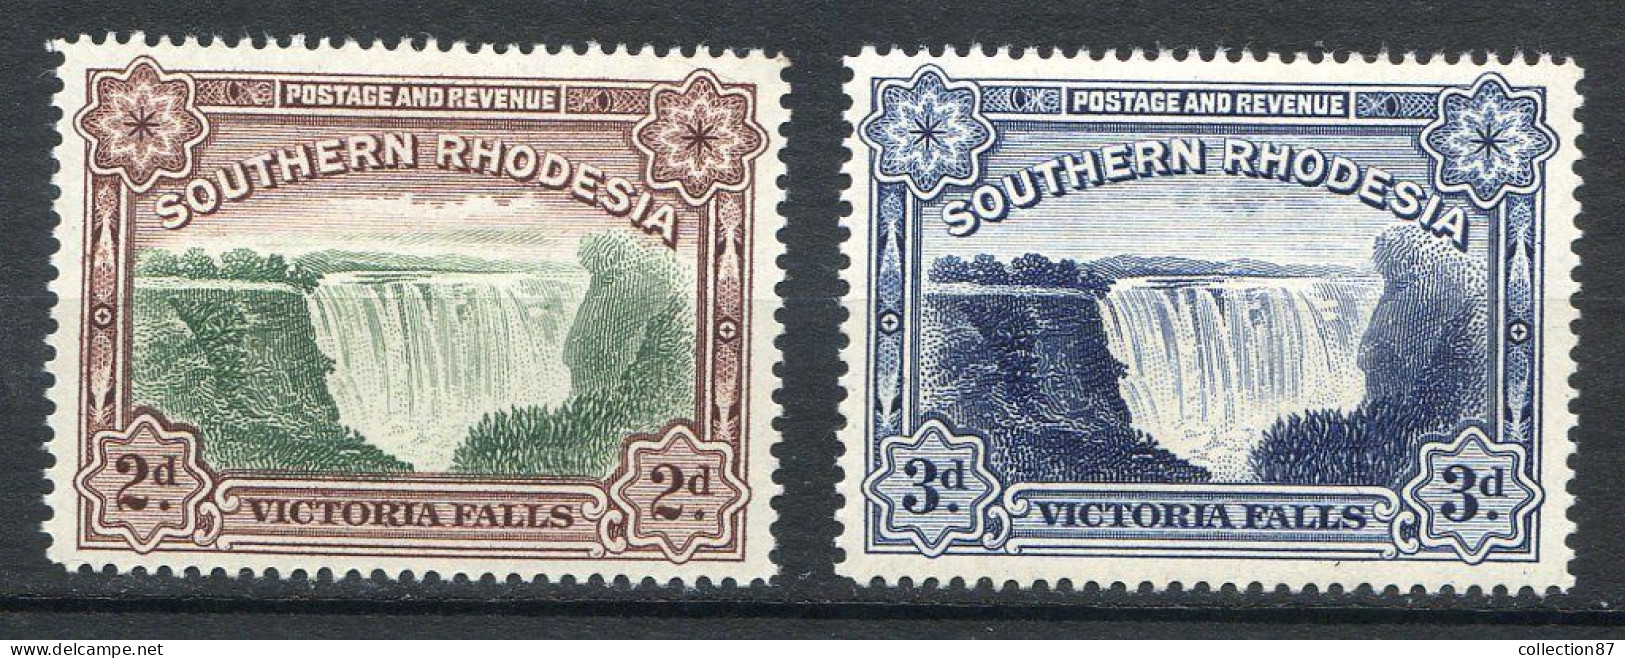 SOUTHERN RHODESIA  < Yv. N° 39 à 30 * Neuf Ch - MH * Cat 22€ (2018) -  VICTORIA FALLS < CASCADES VICTORIA - CASCADE - Southern Rhodesia (...-1964)